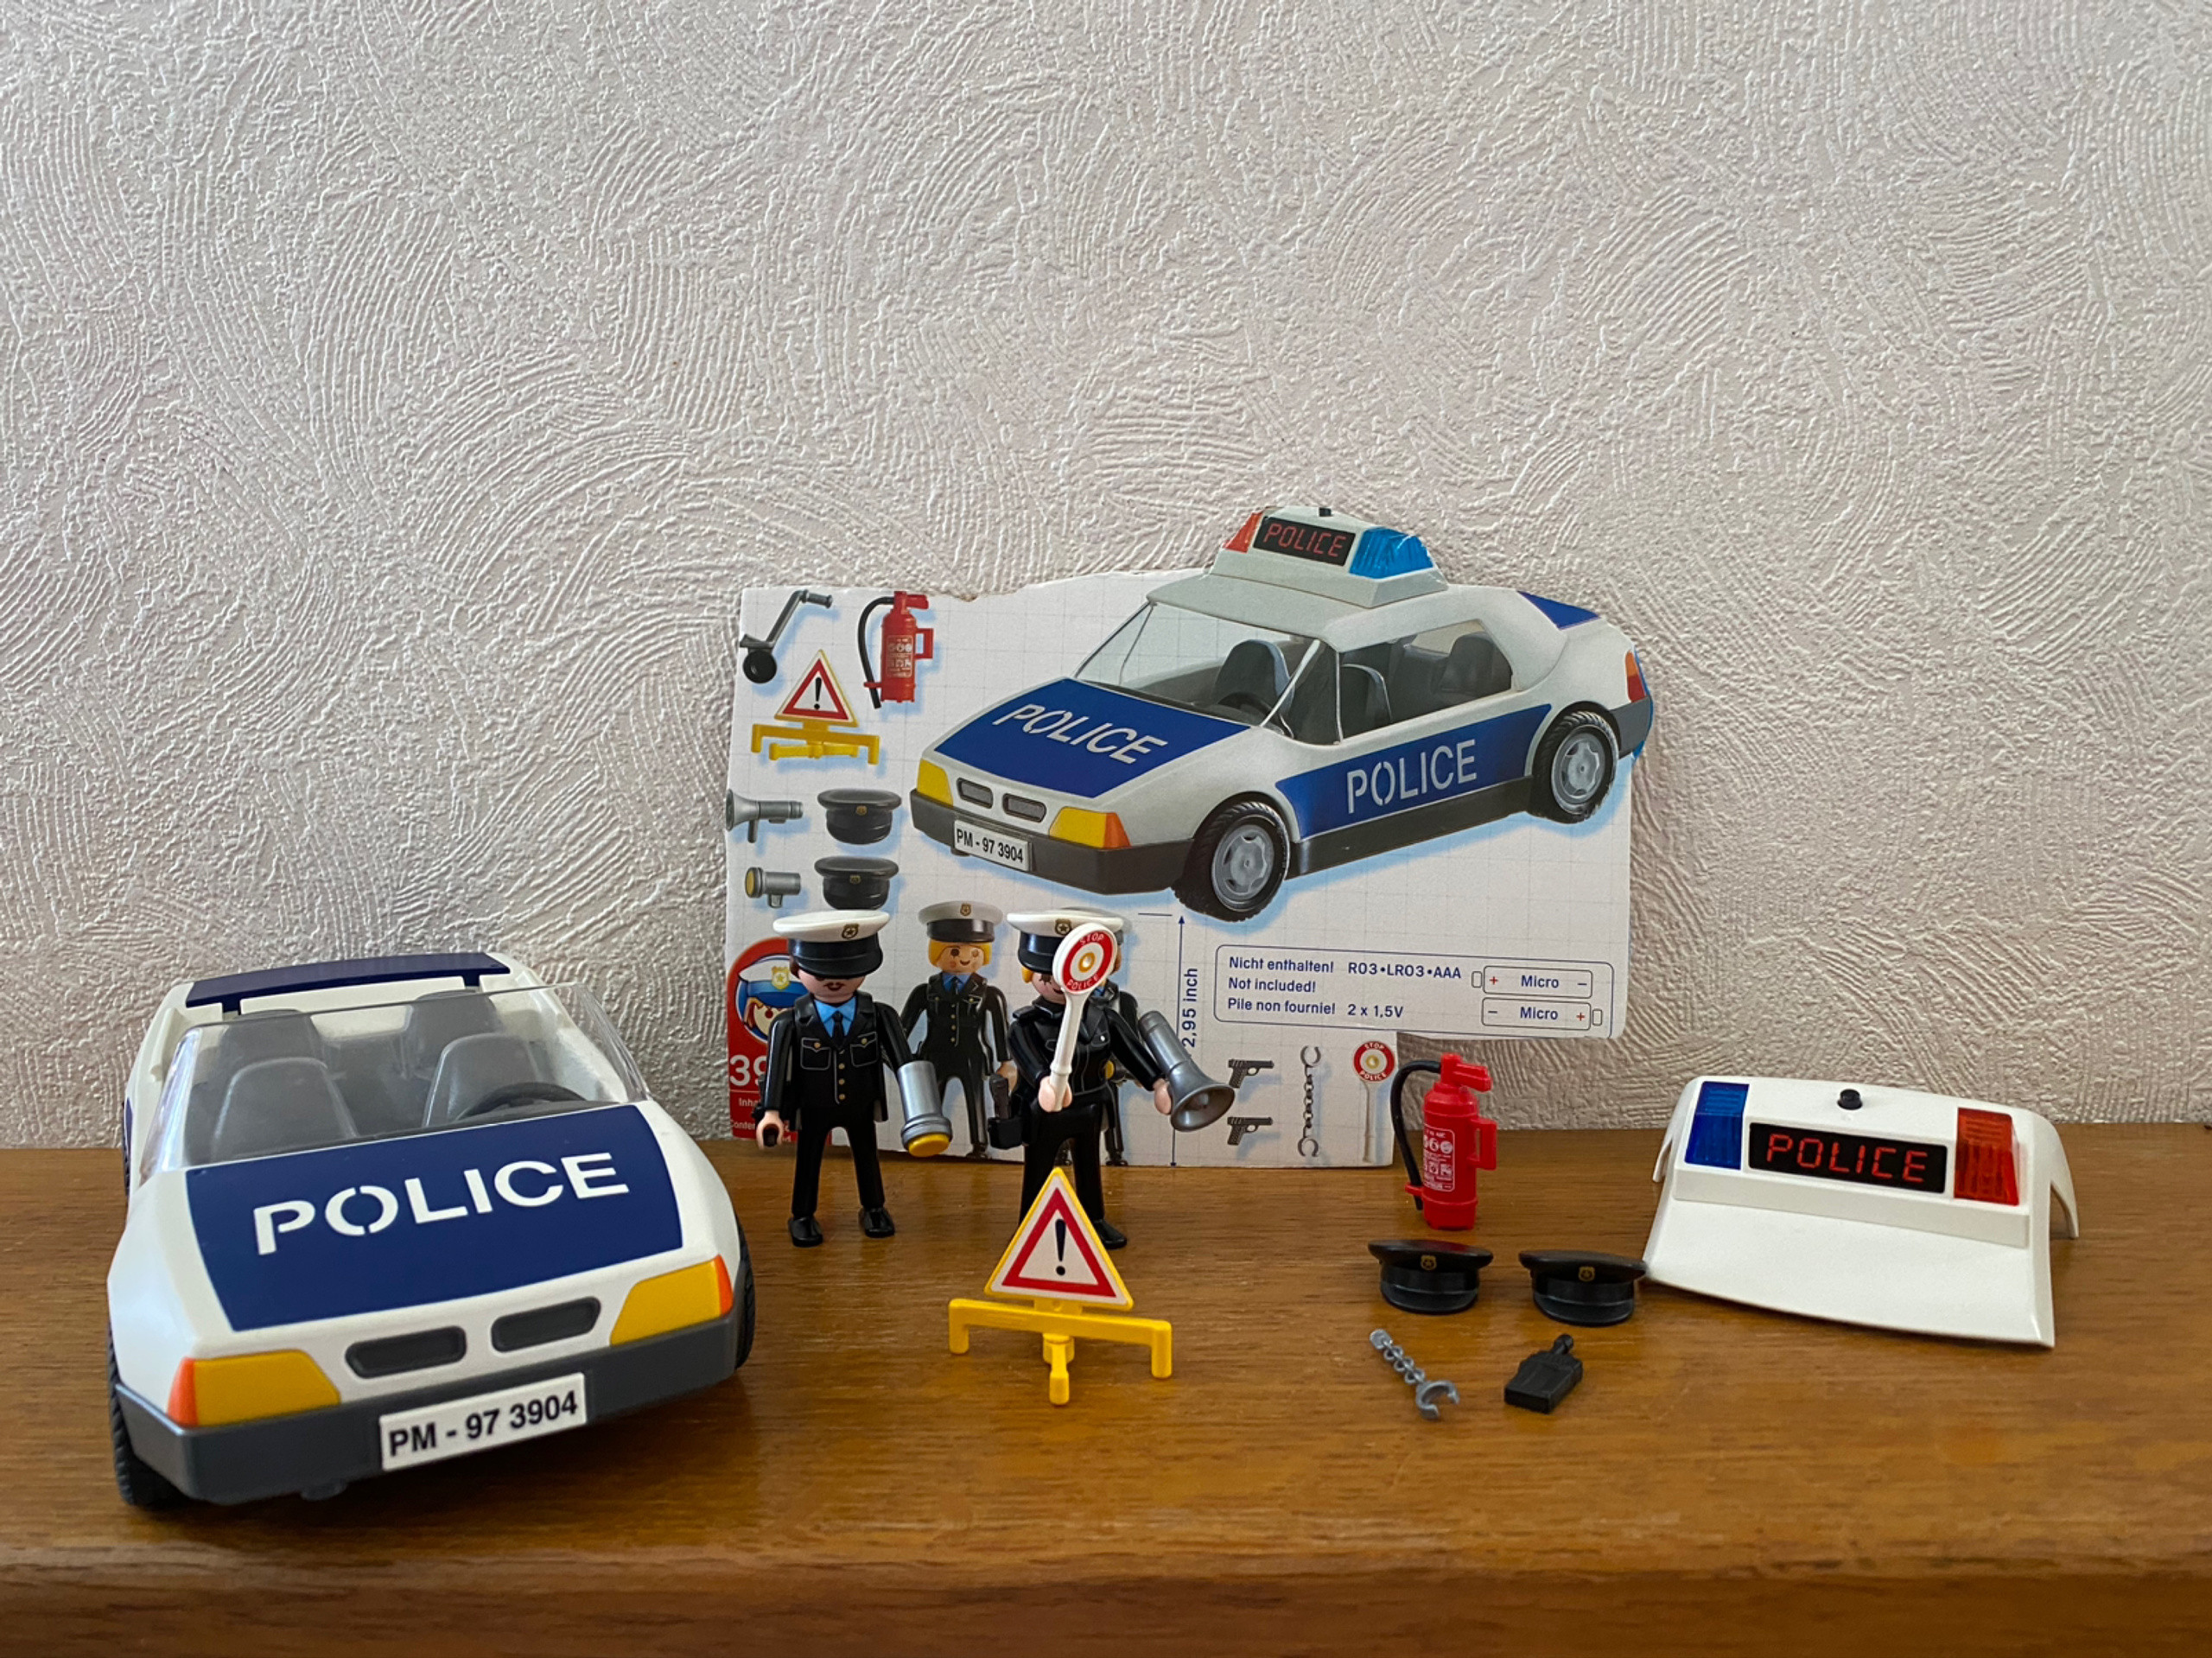 PLAYMOBIL RÉF: 3904 voiture de police (vide) EUR 8,50 - PicClick FR